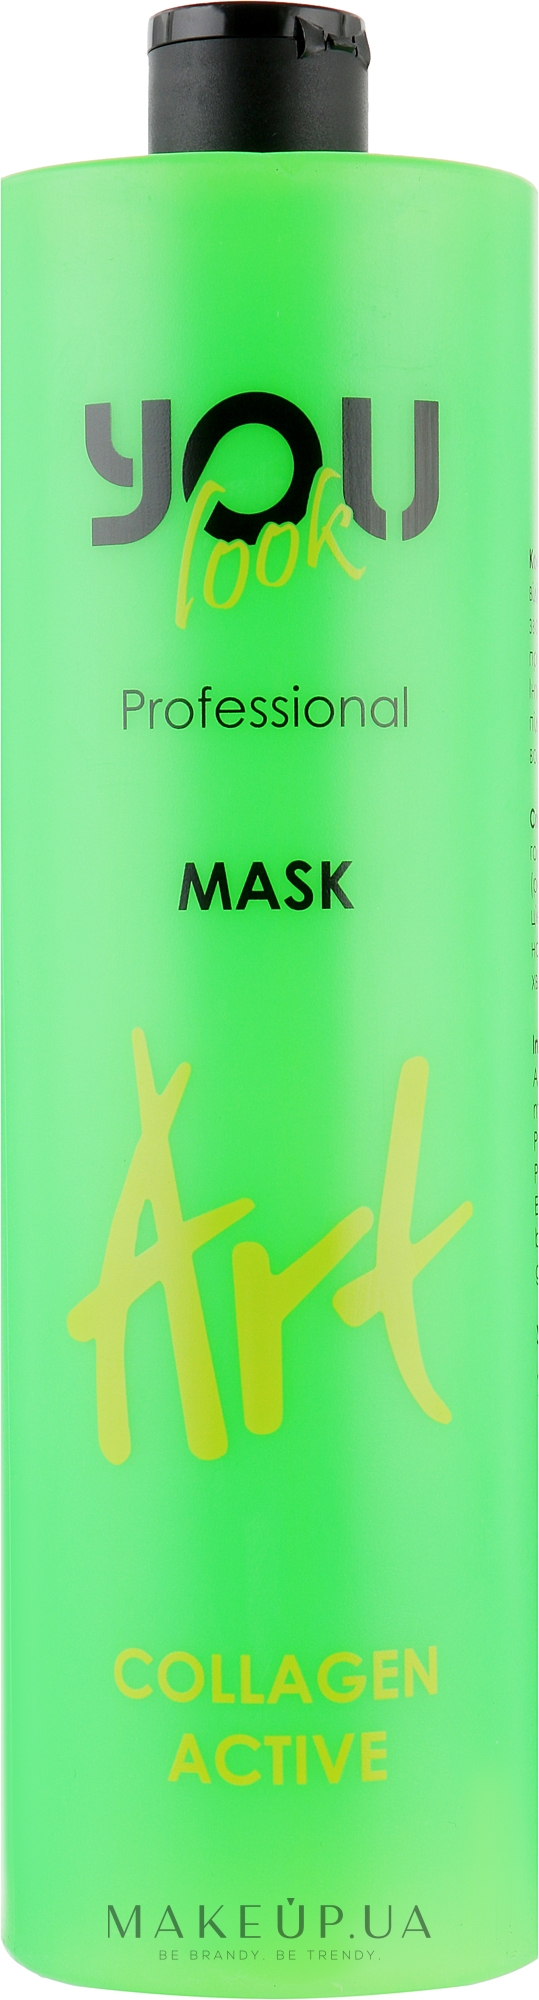 Маска для пошкодженого волосся з колагеном - You Look Professional Art Collagen Active Mask — фото 1000ml